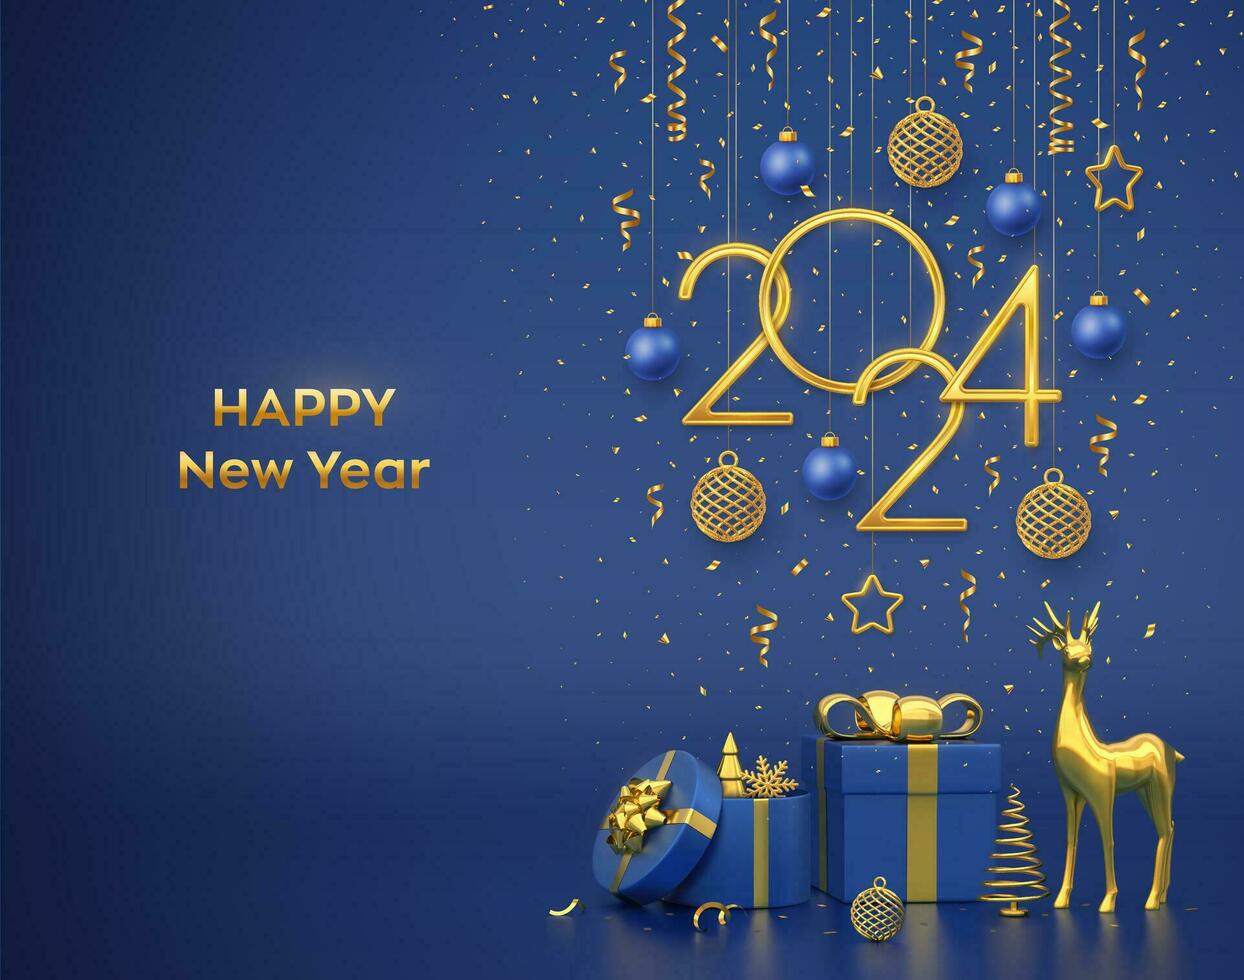 contento nuevo año 2024. colgando dorado metálico números 2024 con estrellas, pelotas y copo de nieve en azul antecedentes. oro ciervo, regalo cajas, metálico pino o abeto, cono forma abeto arboles vector ilustración.